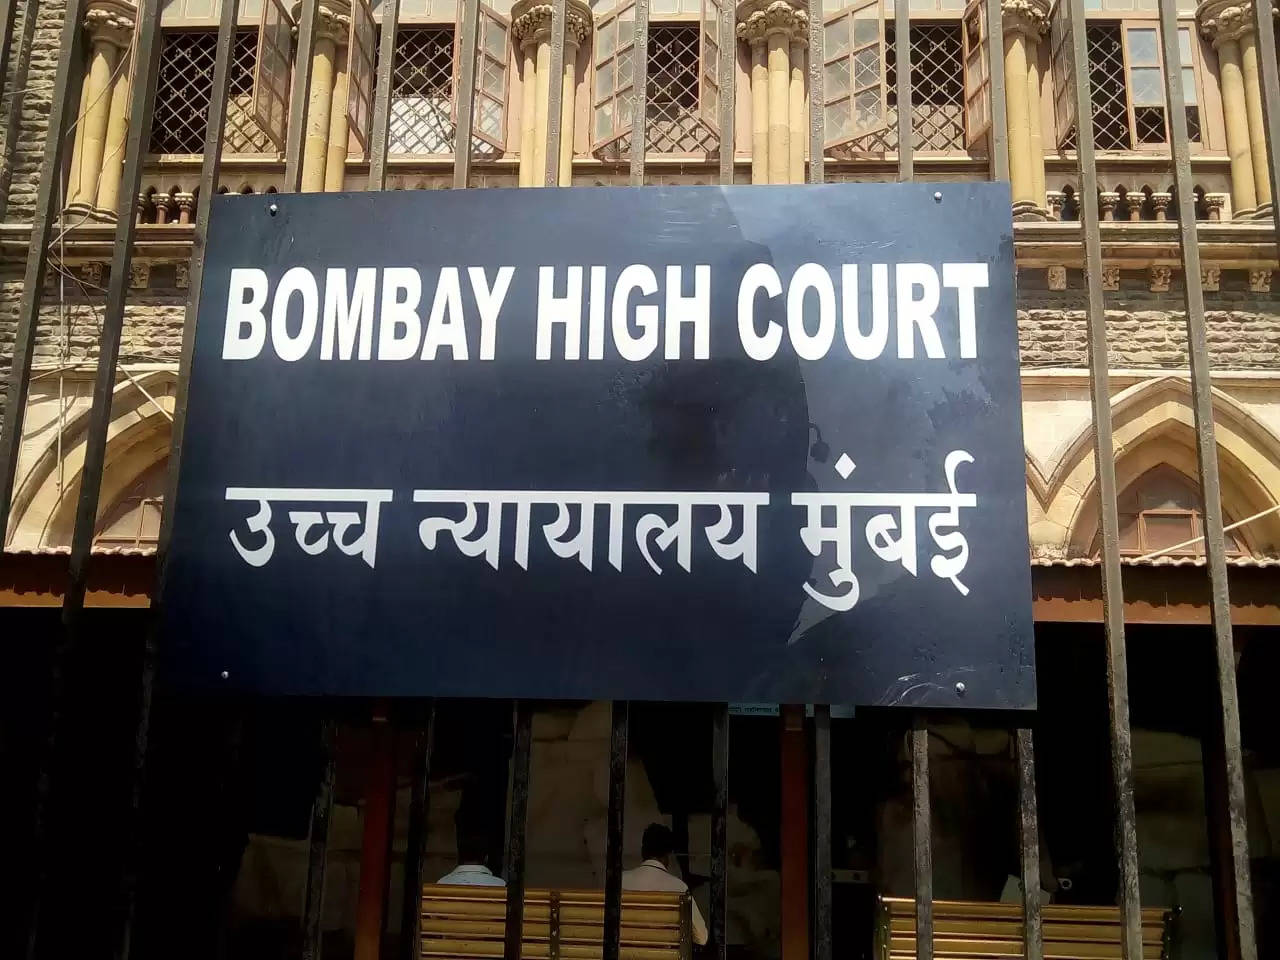 BOBAI HIGH COURT